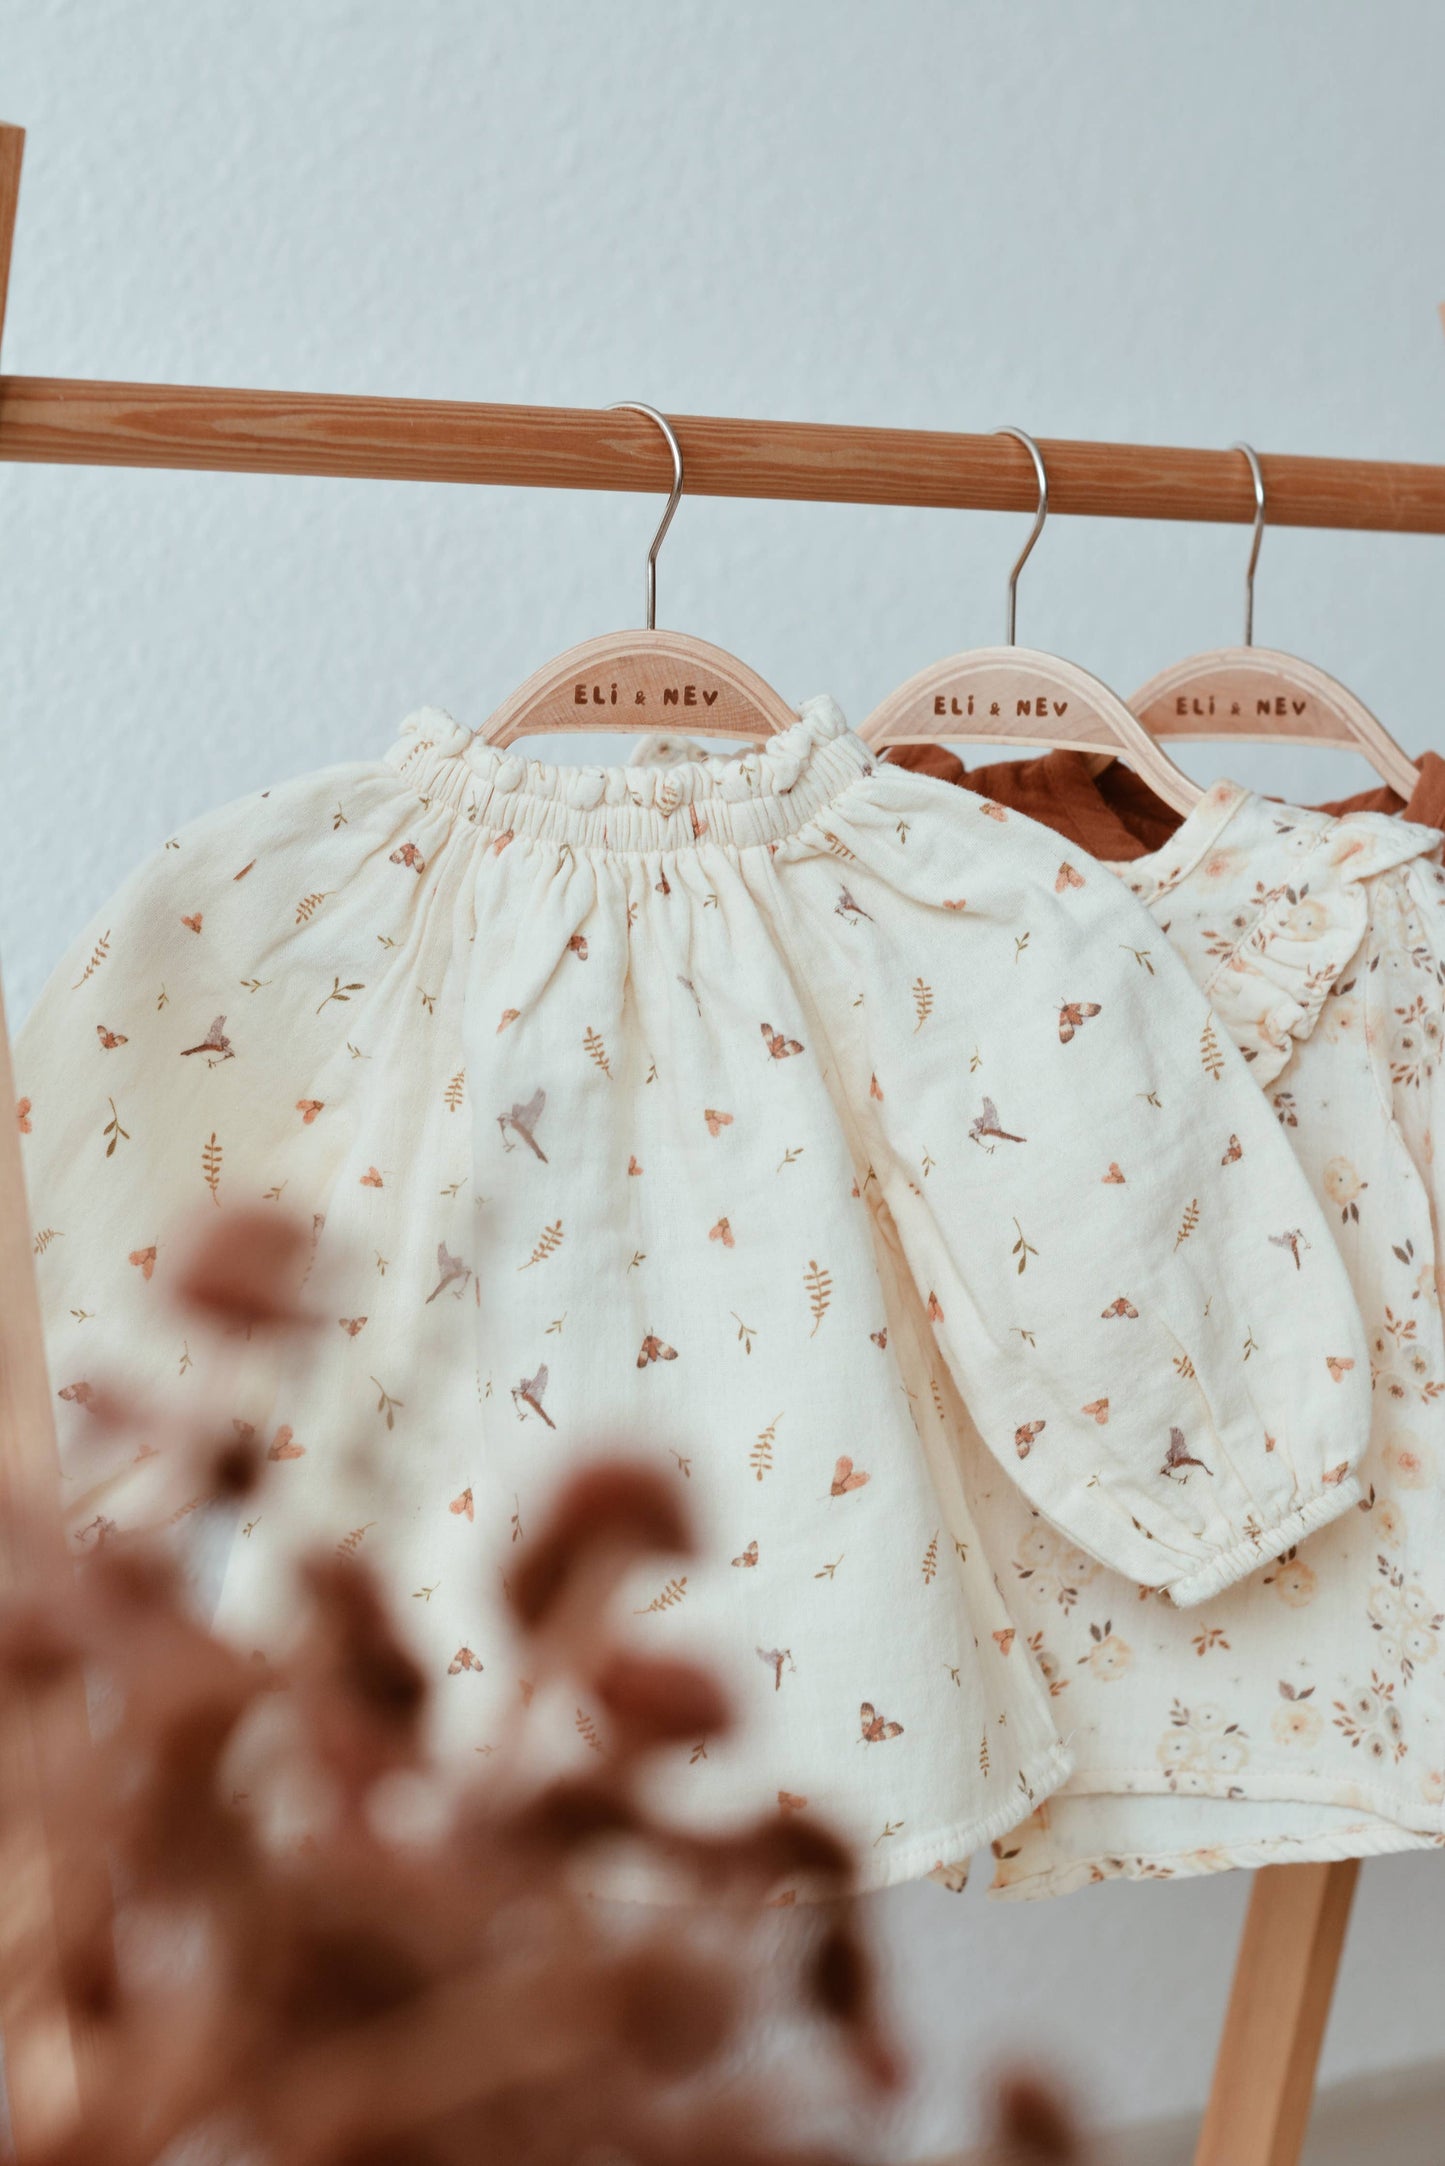 Eli & Nev - Baby / kids 100% cotton muslin blouse